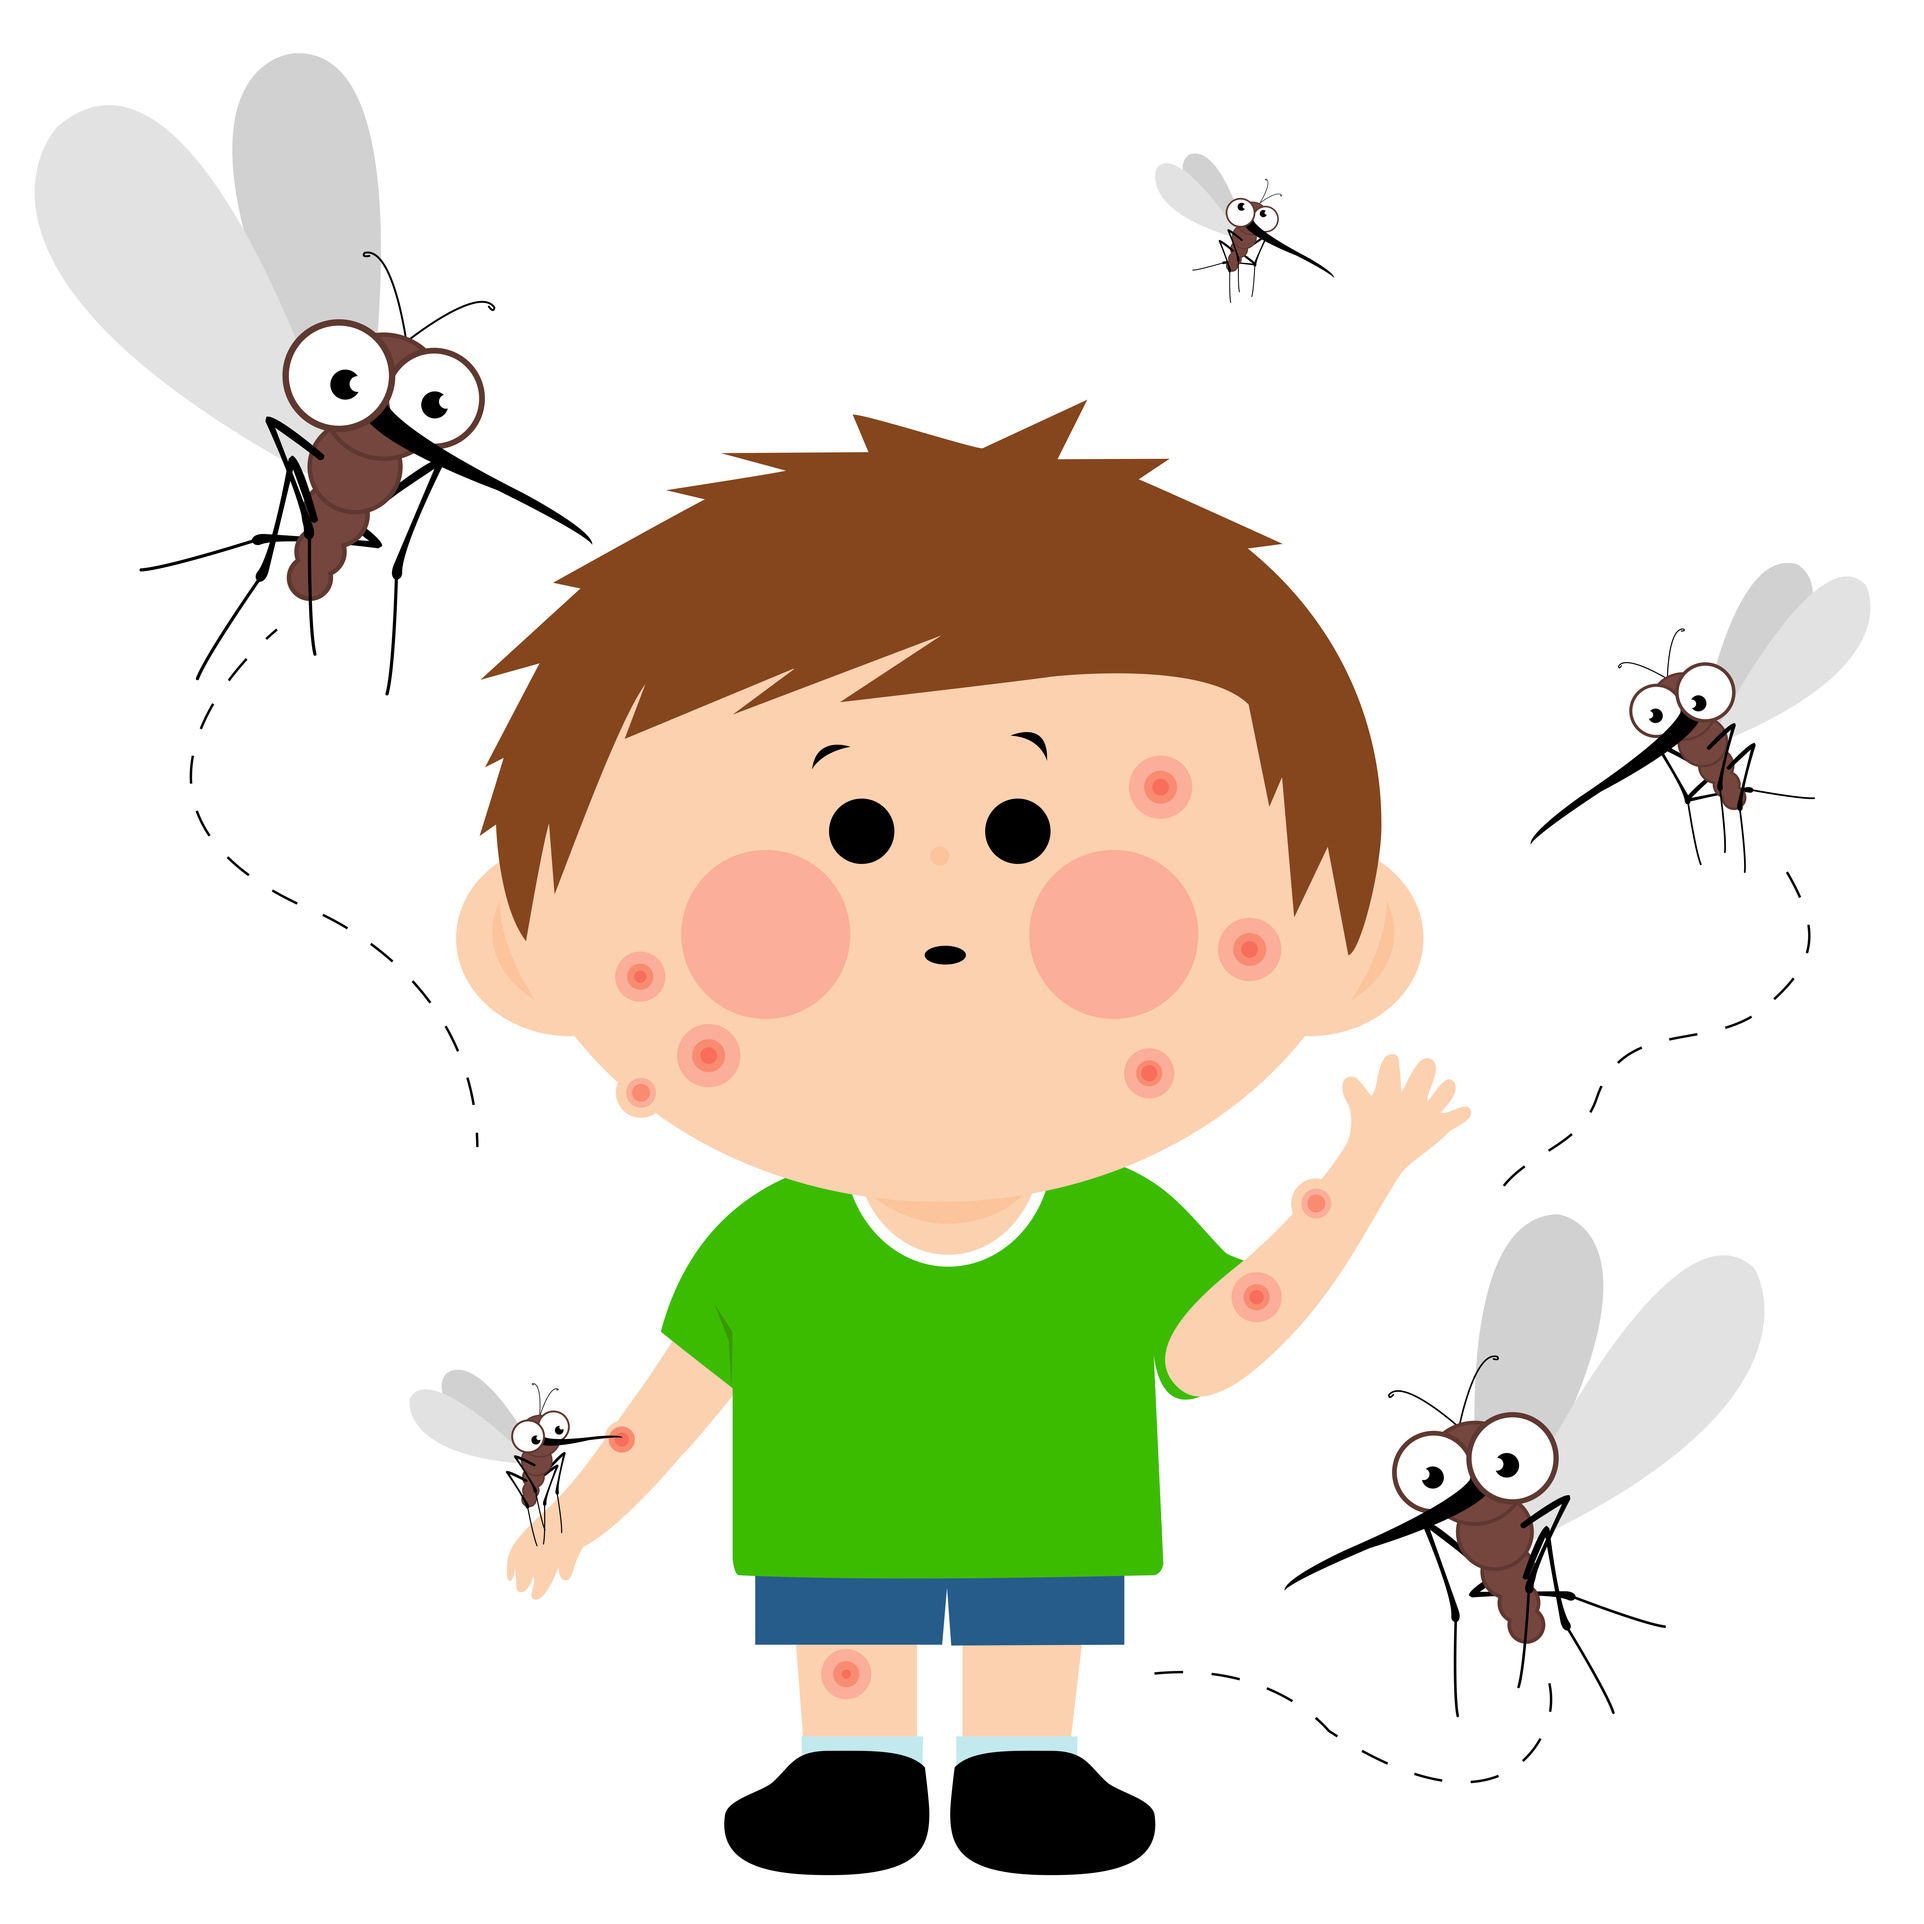 夏季蚊虫叮咬高发，宝宝防护不可大意